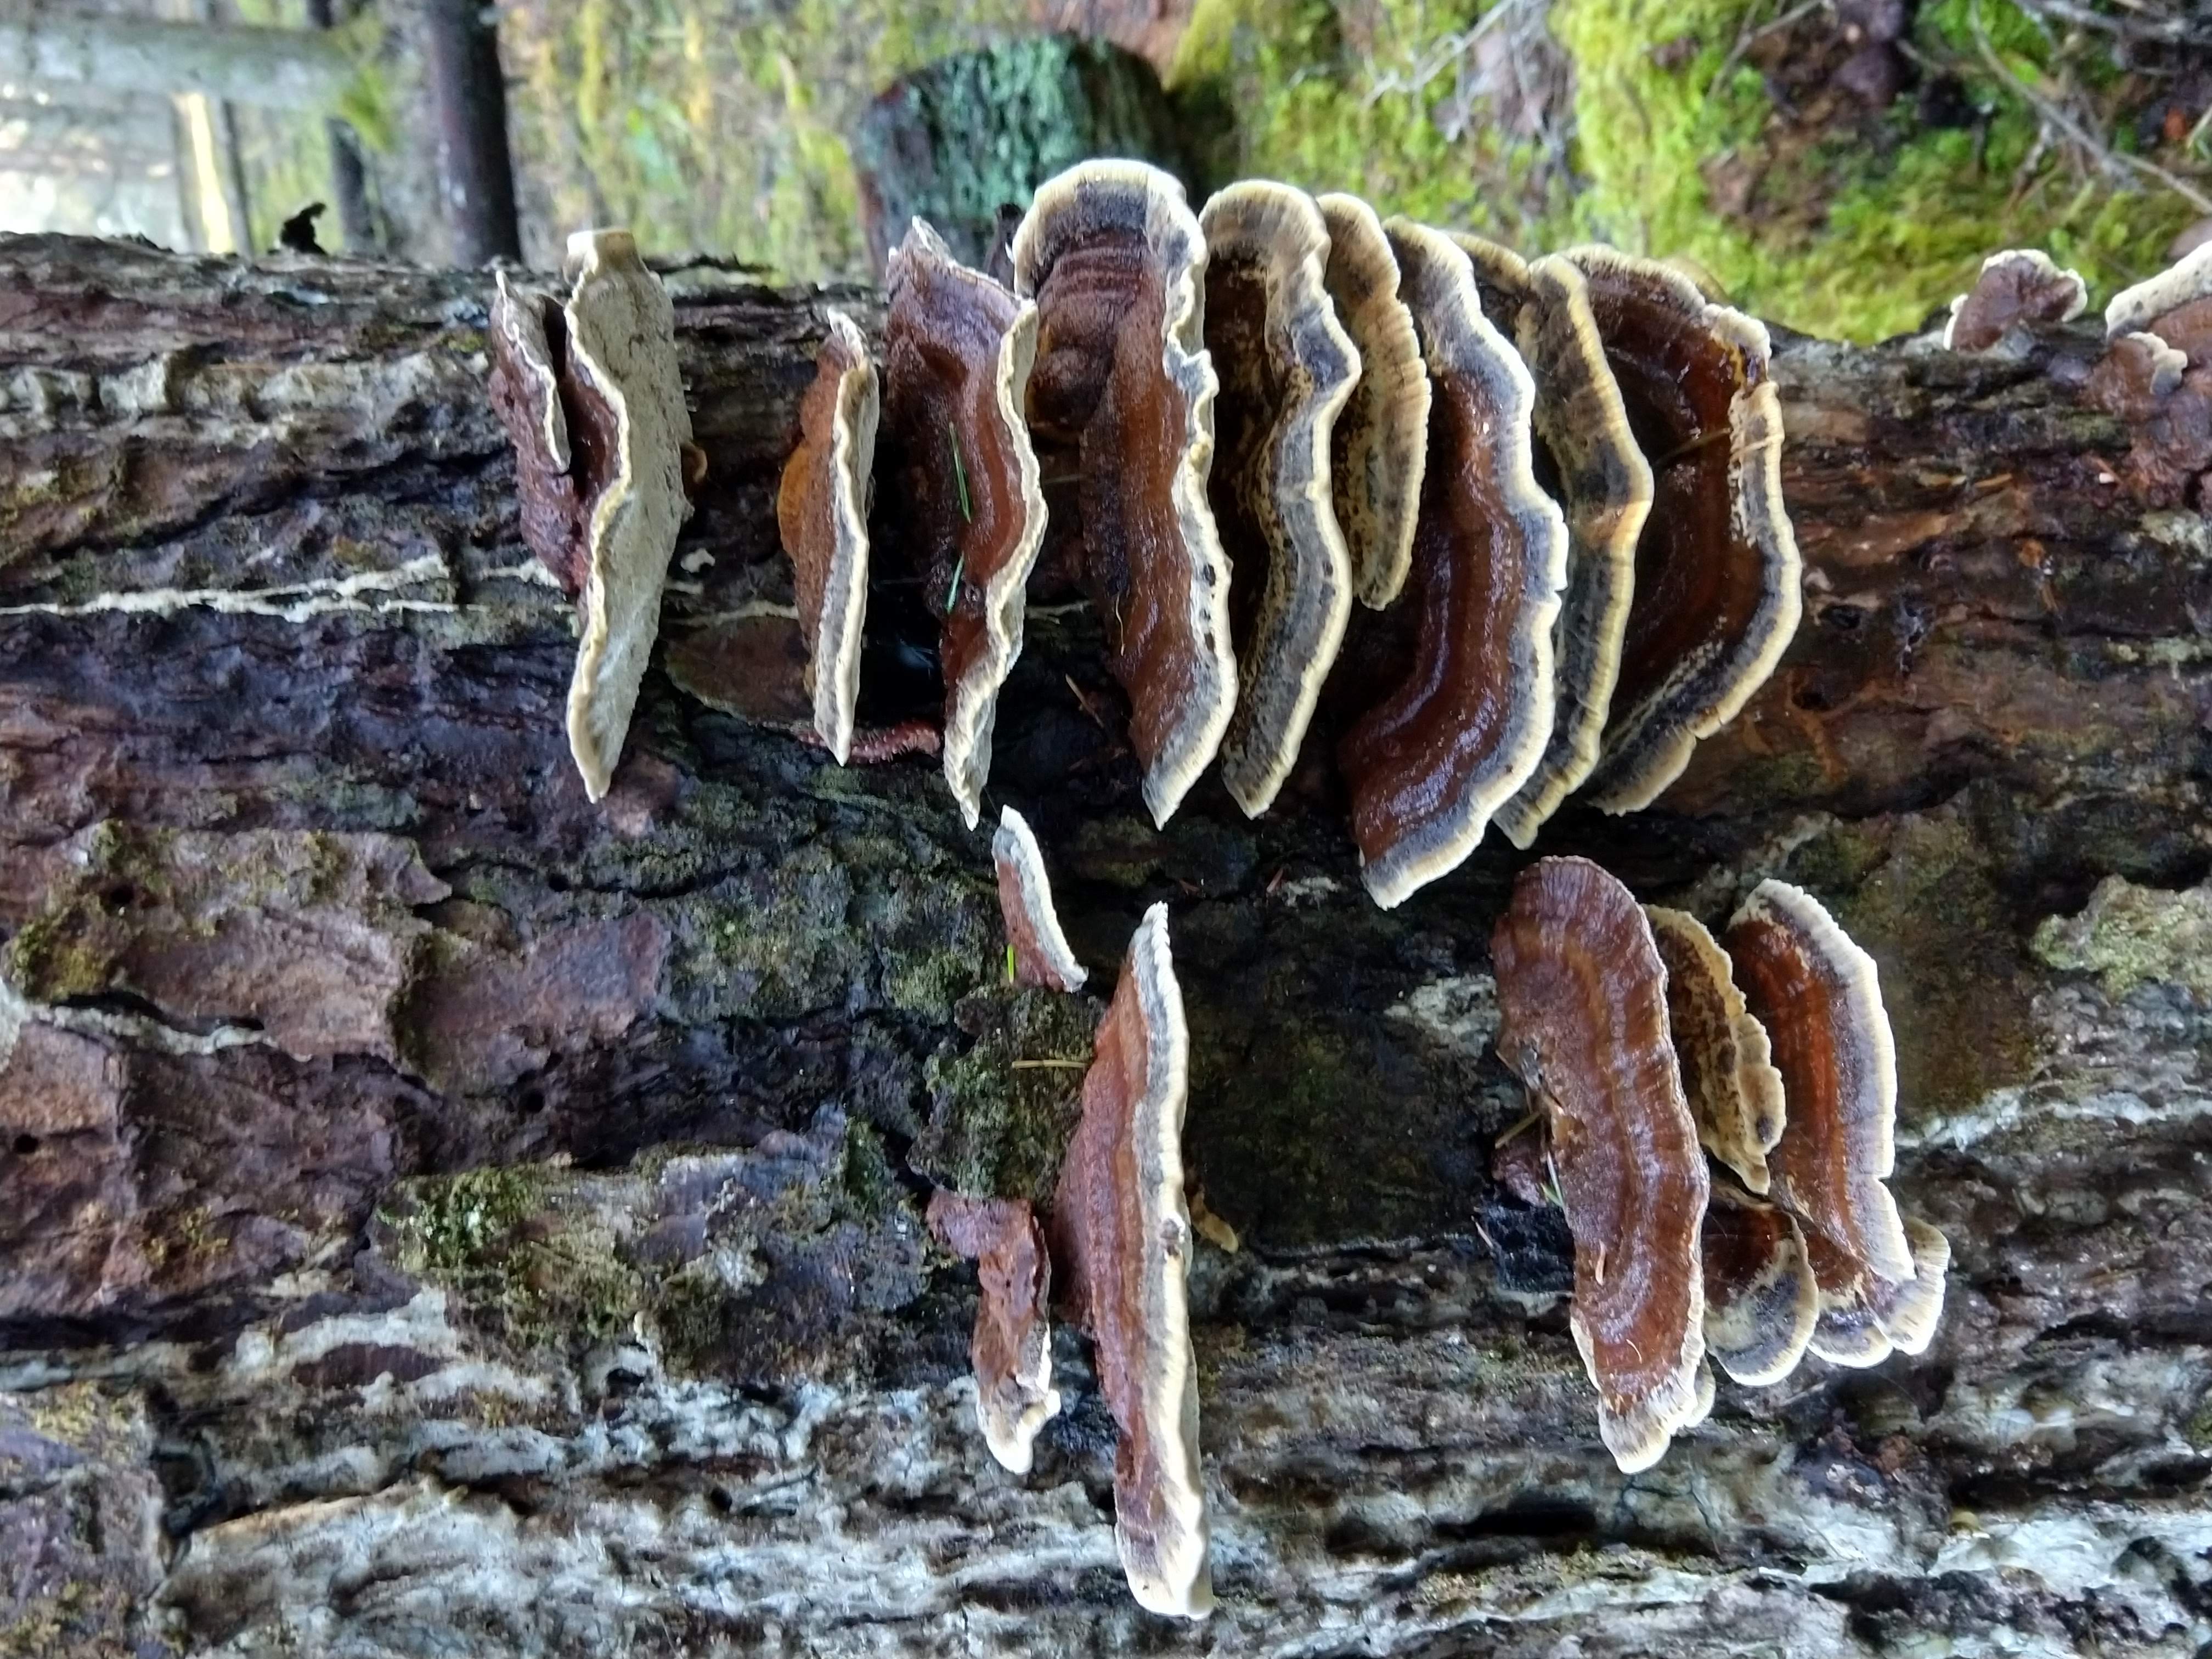 A shell-shaped shelf fungus growing on a living tree.